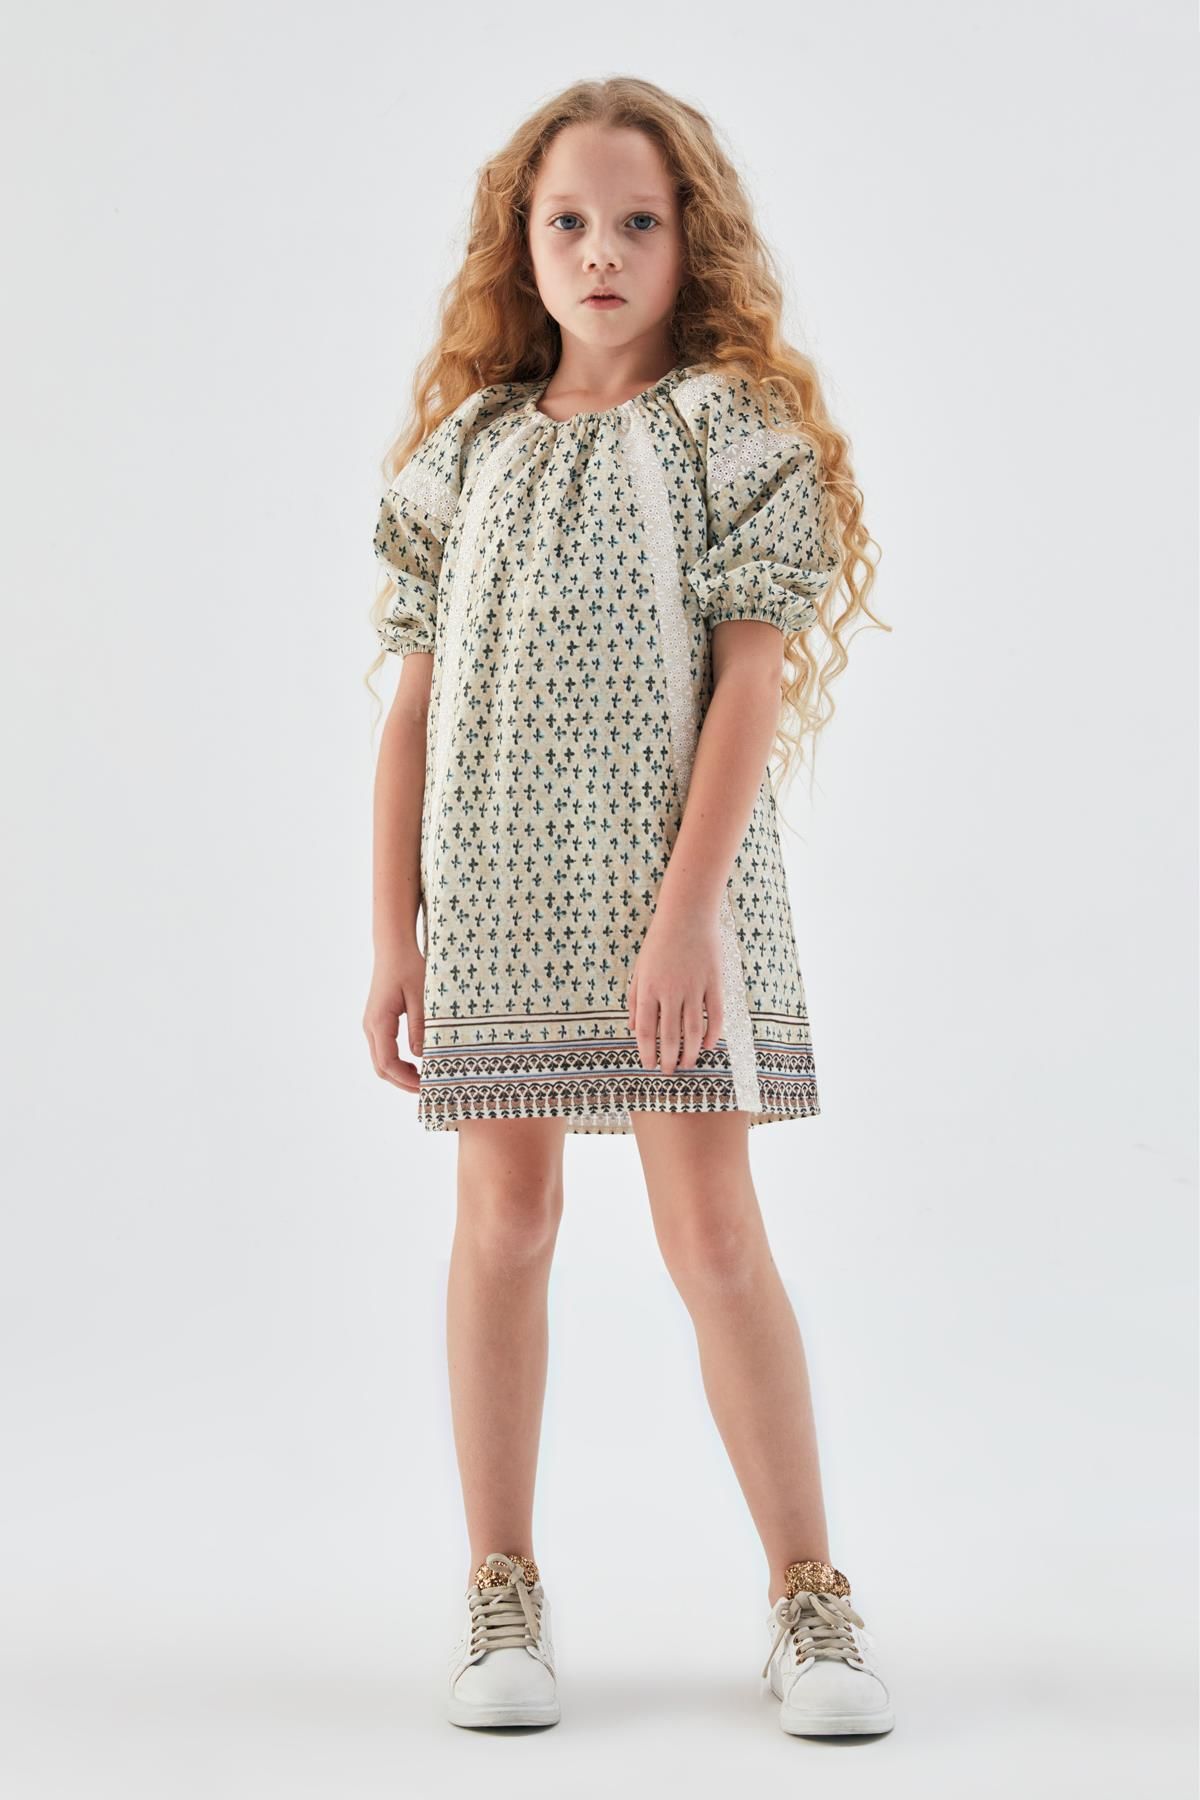 Tyess Bg Store Kız Çocuk Desenli Elbise 23psstj4902